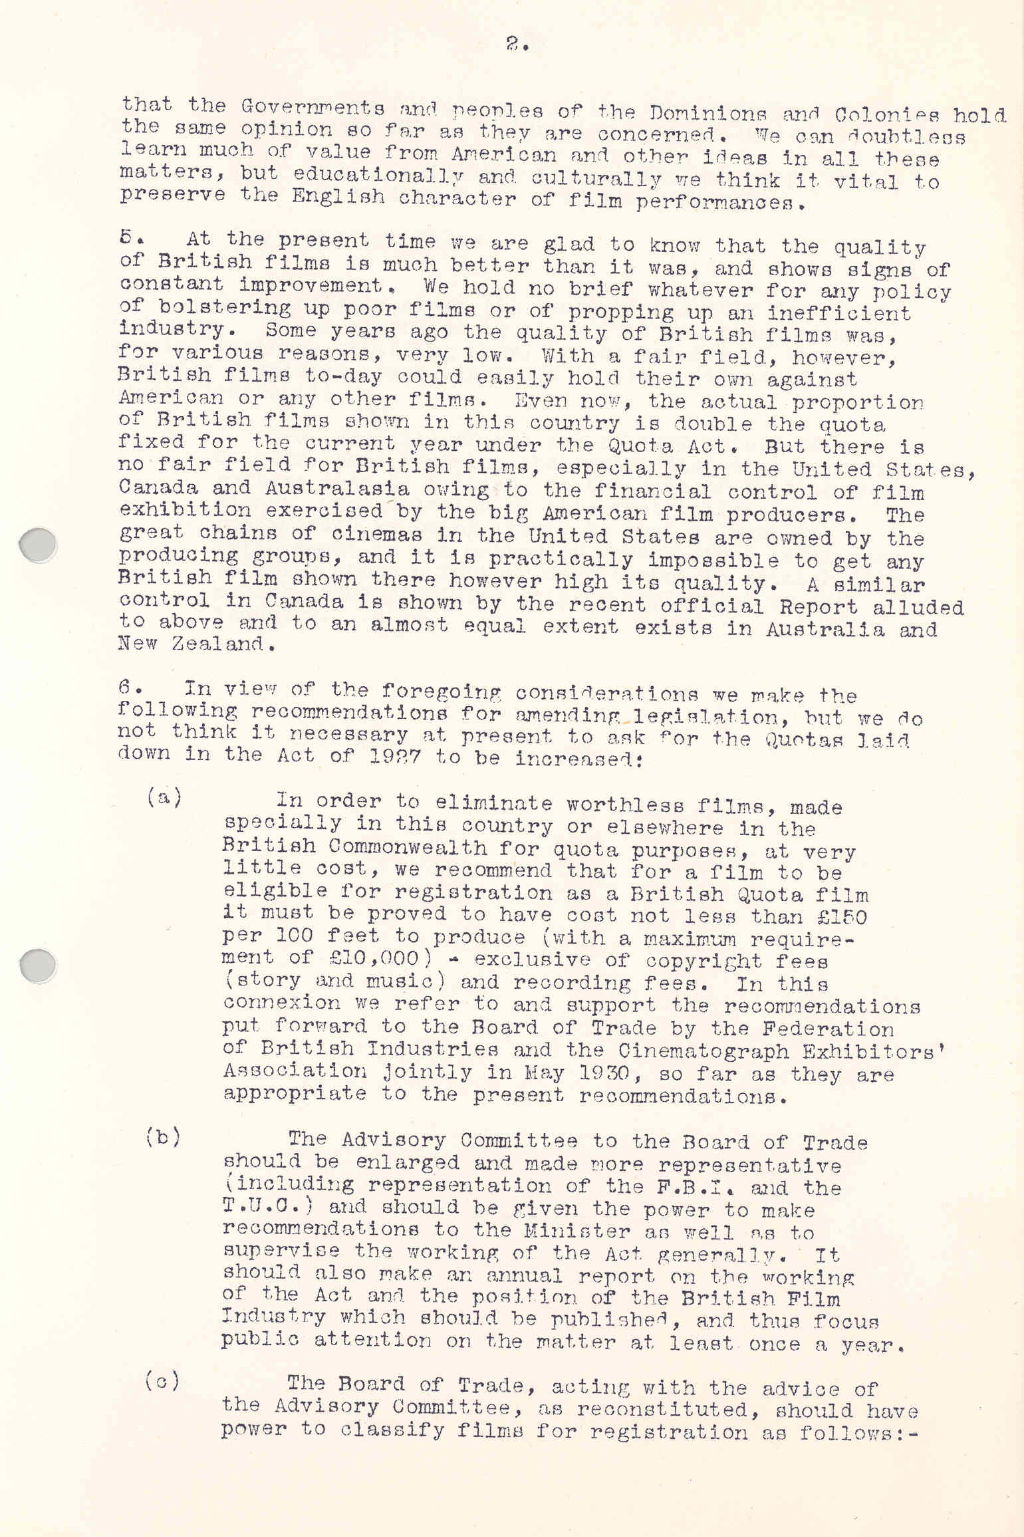 Memorandum on the state of the British film industry, 1932